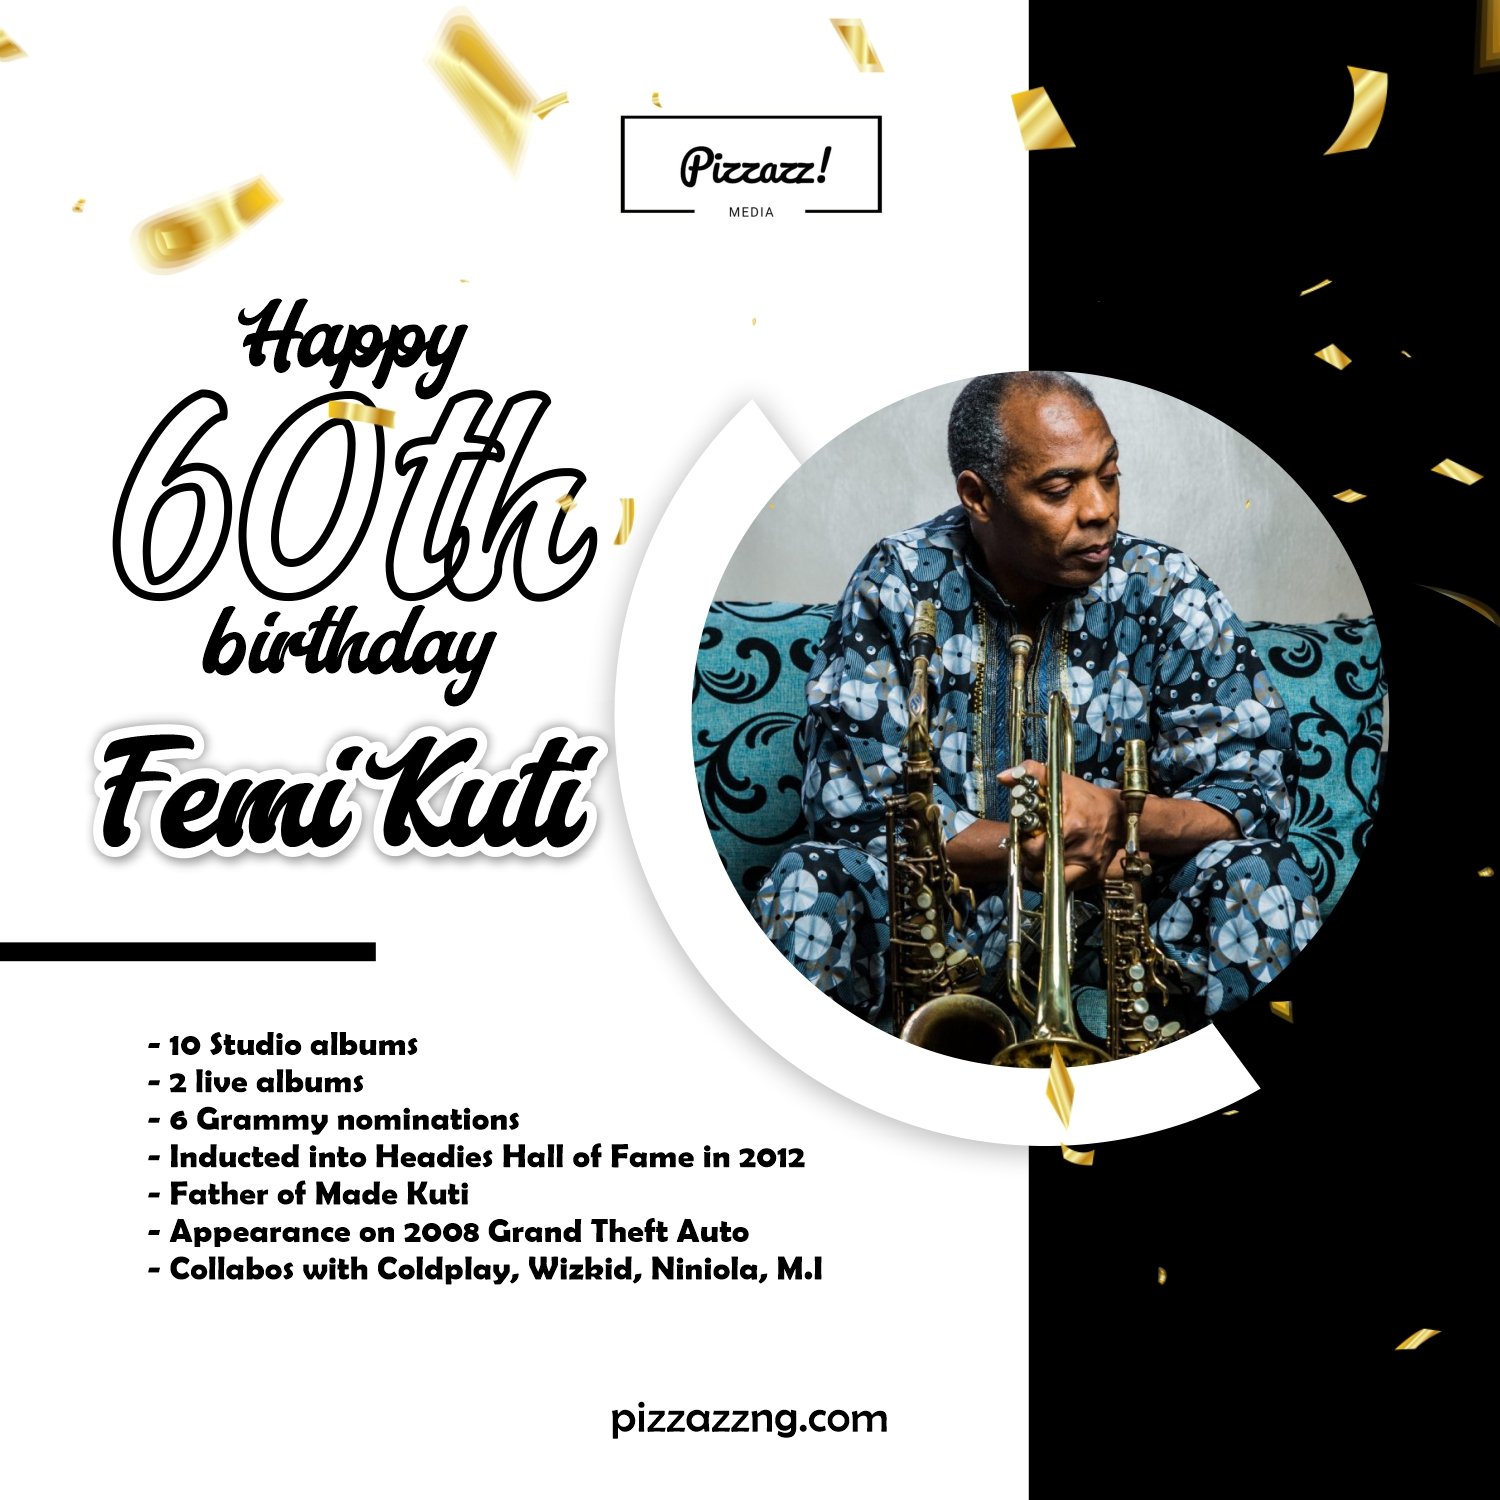 Happy 60th birthday to the legendary Femi Kuti Music royalty to the bone  